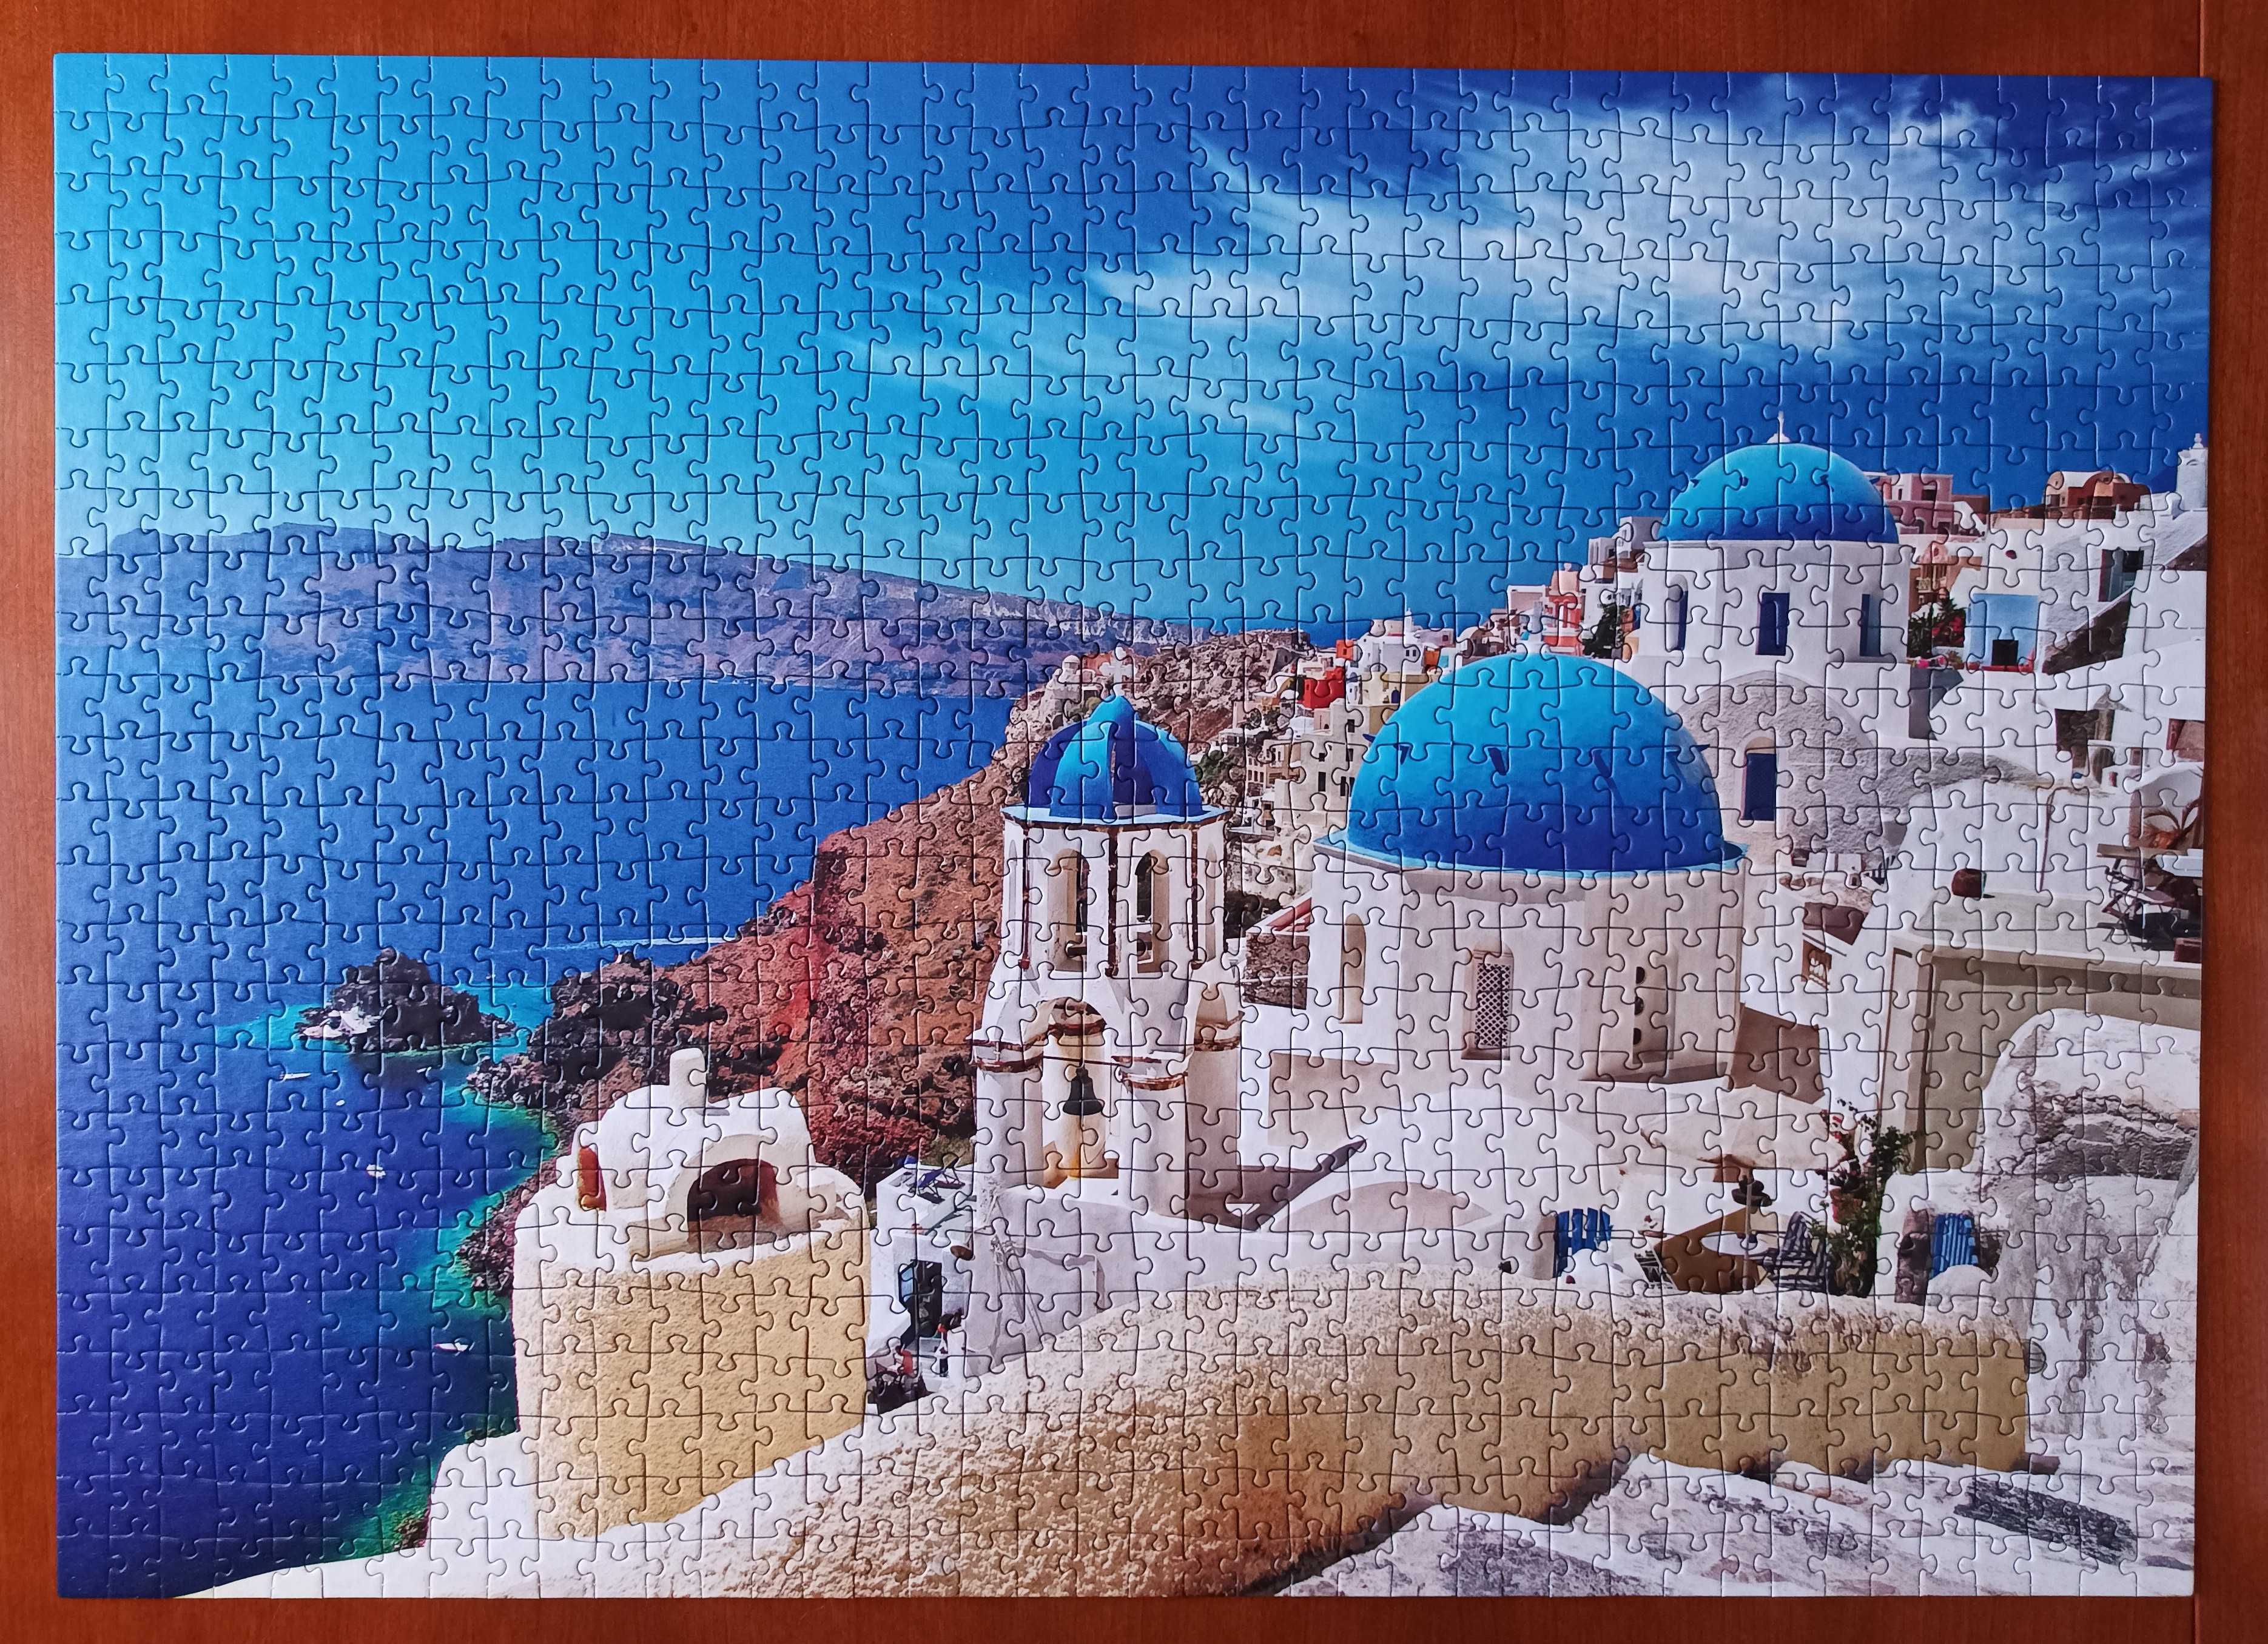 Puzzle 1000 Szlakiem Odkrywców - Kraje Śródziemnomorskie - Santorini